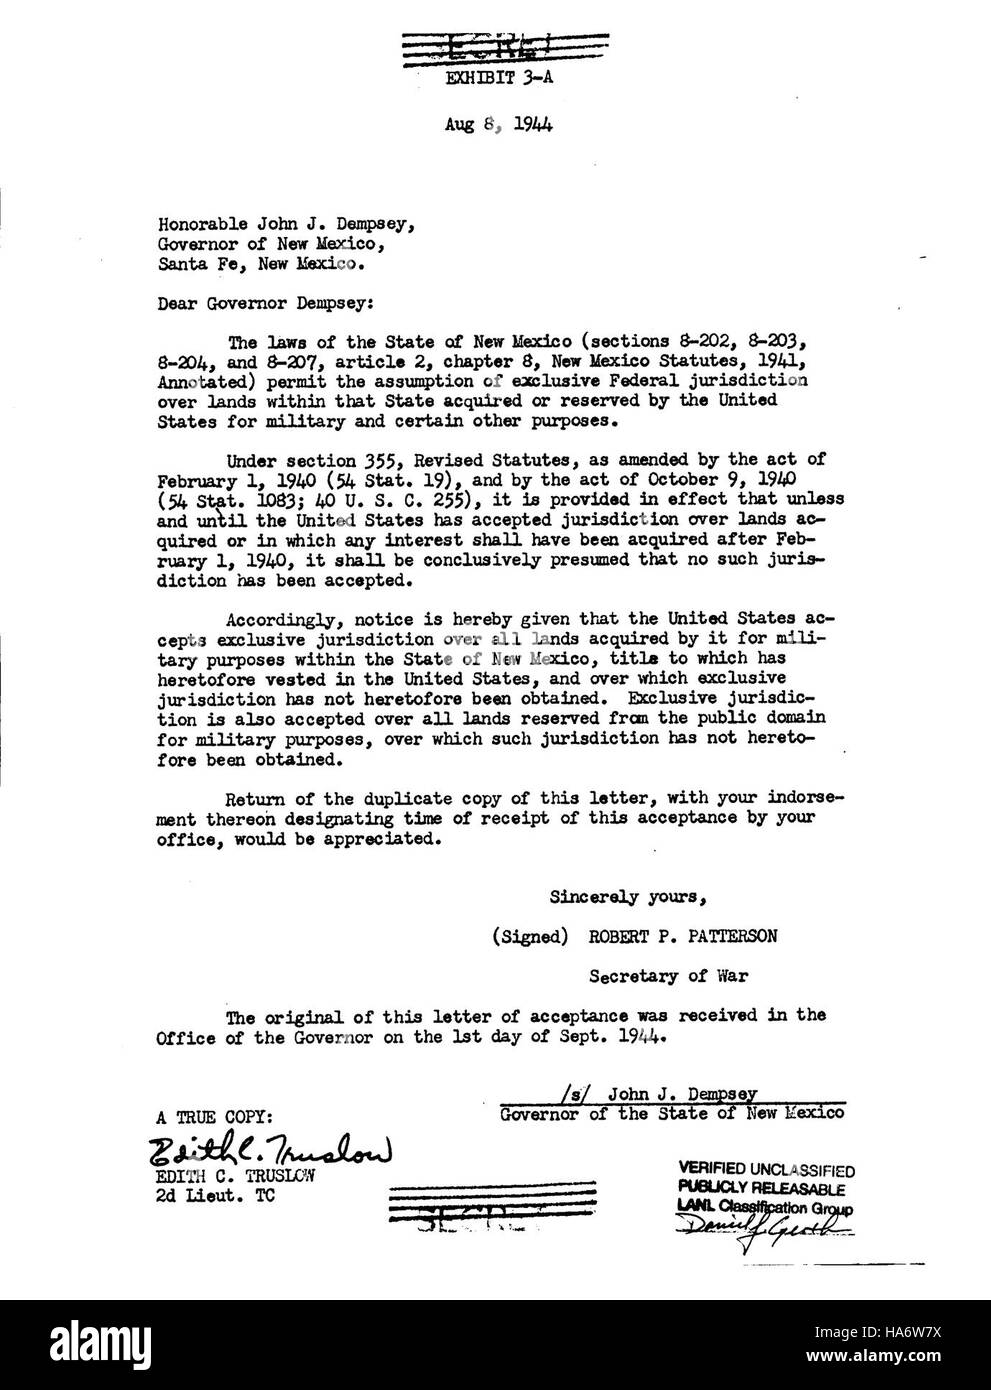 7597524732 losalamosnatlab Stati Uniti accetta la giurisdizione esclusiva su terre nel Nuovo Messico il 8 Agosto 1944 Foto Stock